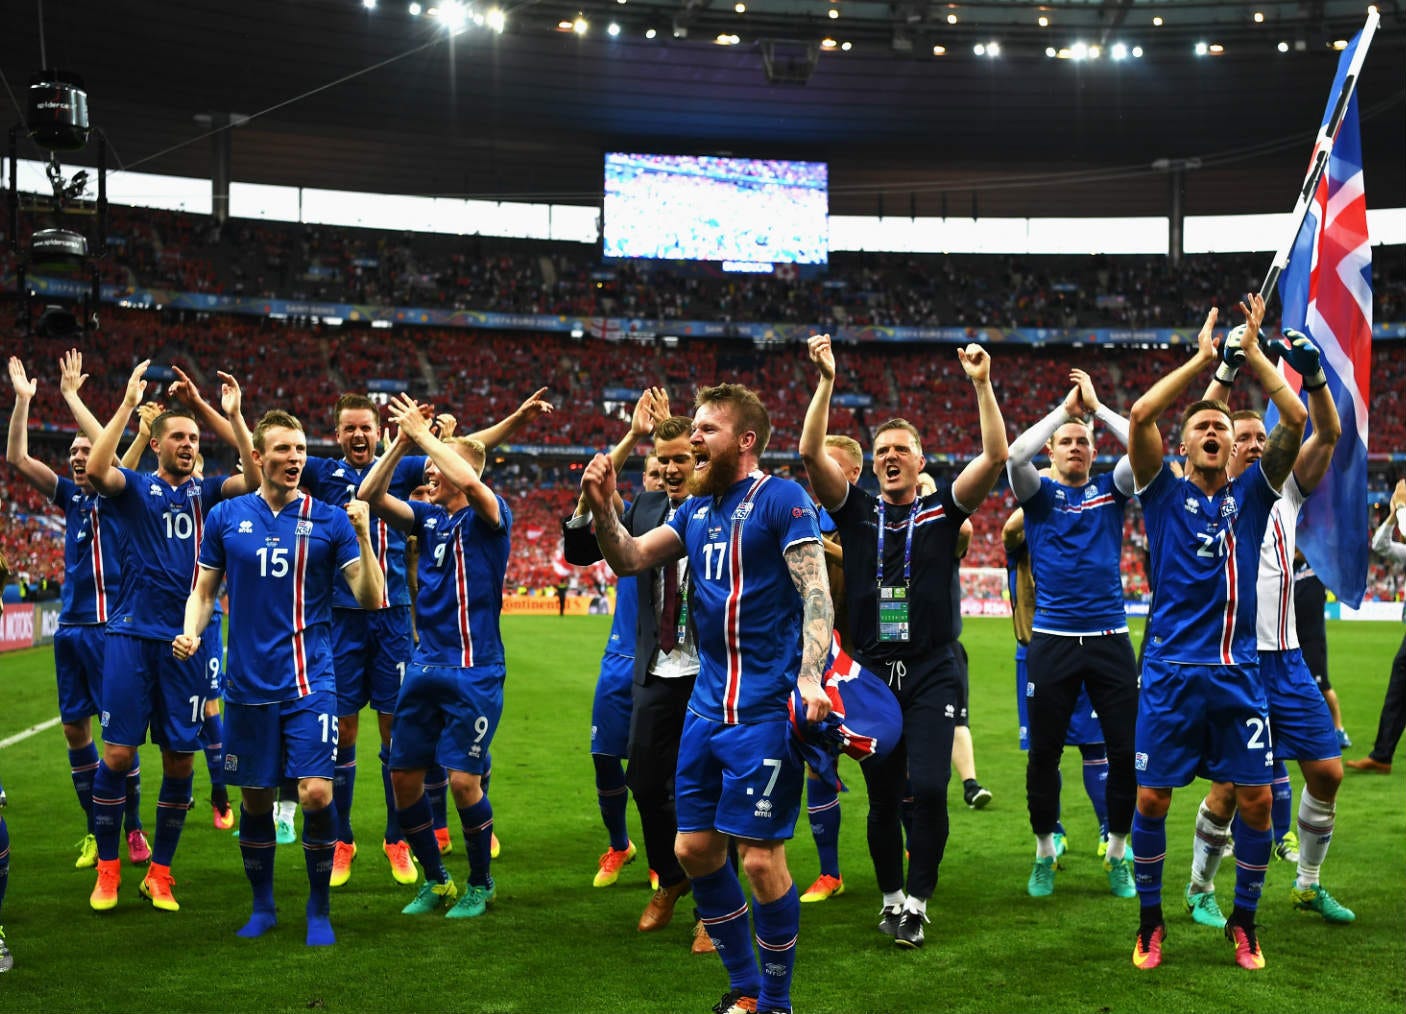 W杯欧州予選総括 最少国 アイスランドとスウェーデンの躍進 縮まる大国と小国の差 Goal Com 日本